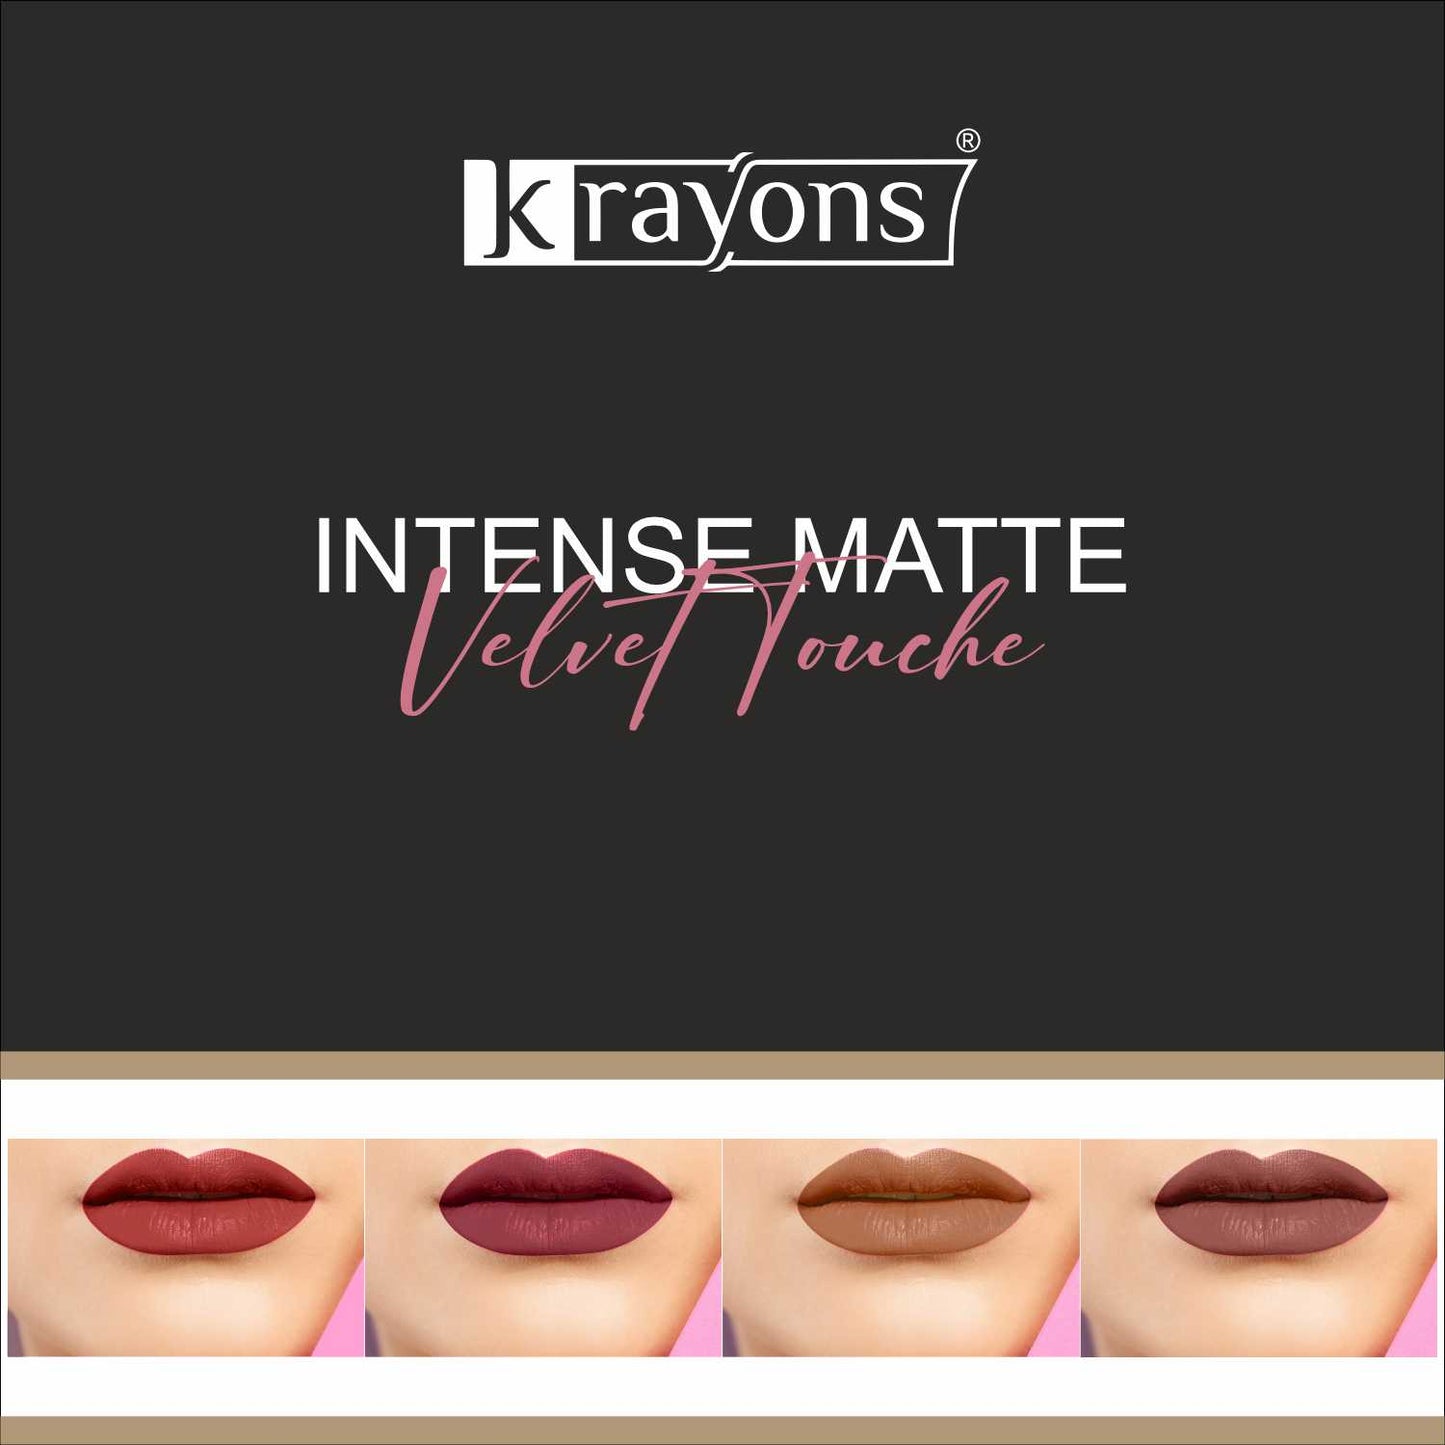 Krayons Intense Matte Lipstick, Waterproof, Longlasting, Scarlet Red, Cherry Maroon, Nude Beige, Chocolate Caramel, 3.5gm Each (Pack of 4)